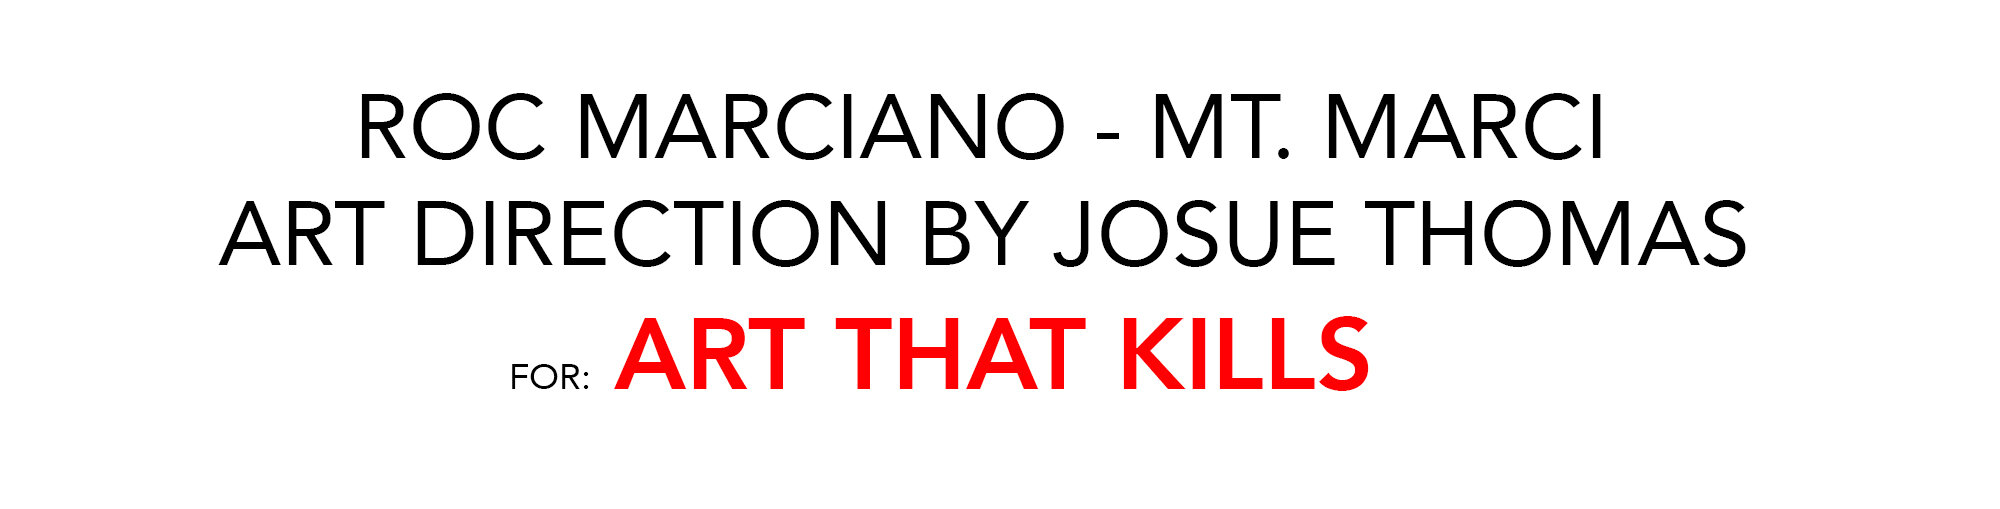 ROC MT MARCI ART THAT KILLS.jpg